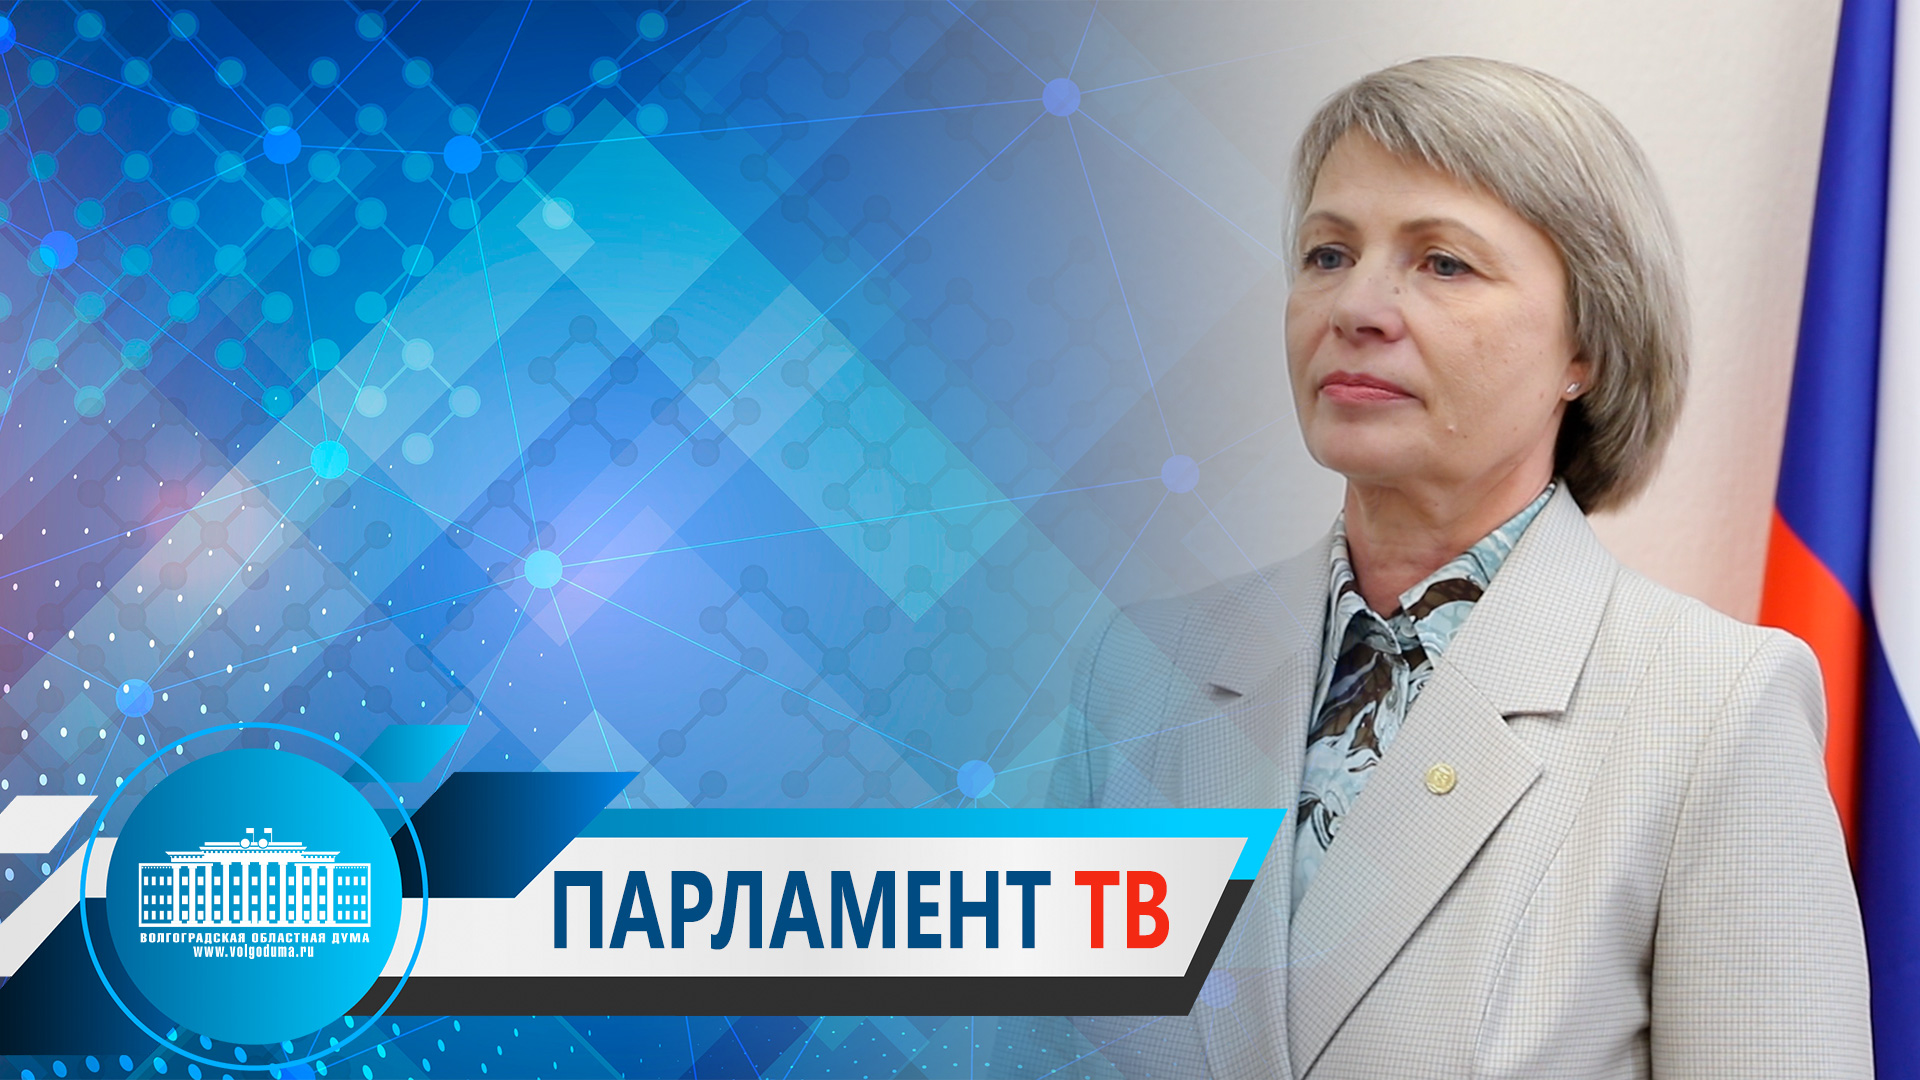 Татьяна Распутина: «В закон о бесплатной юридической помощи предложено внести уточнения»